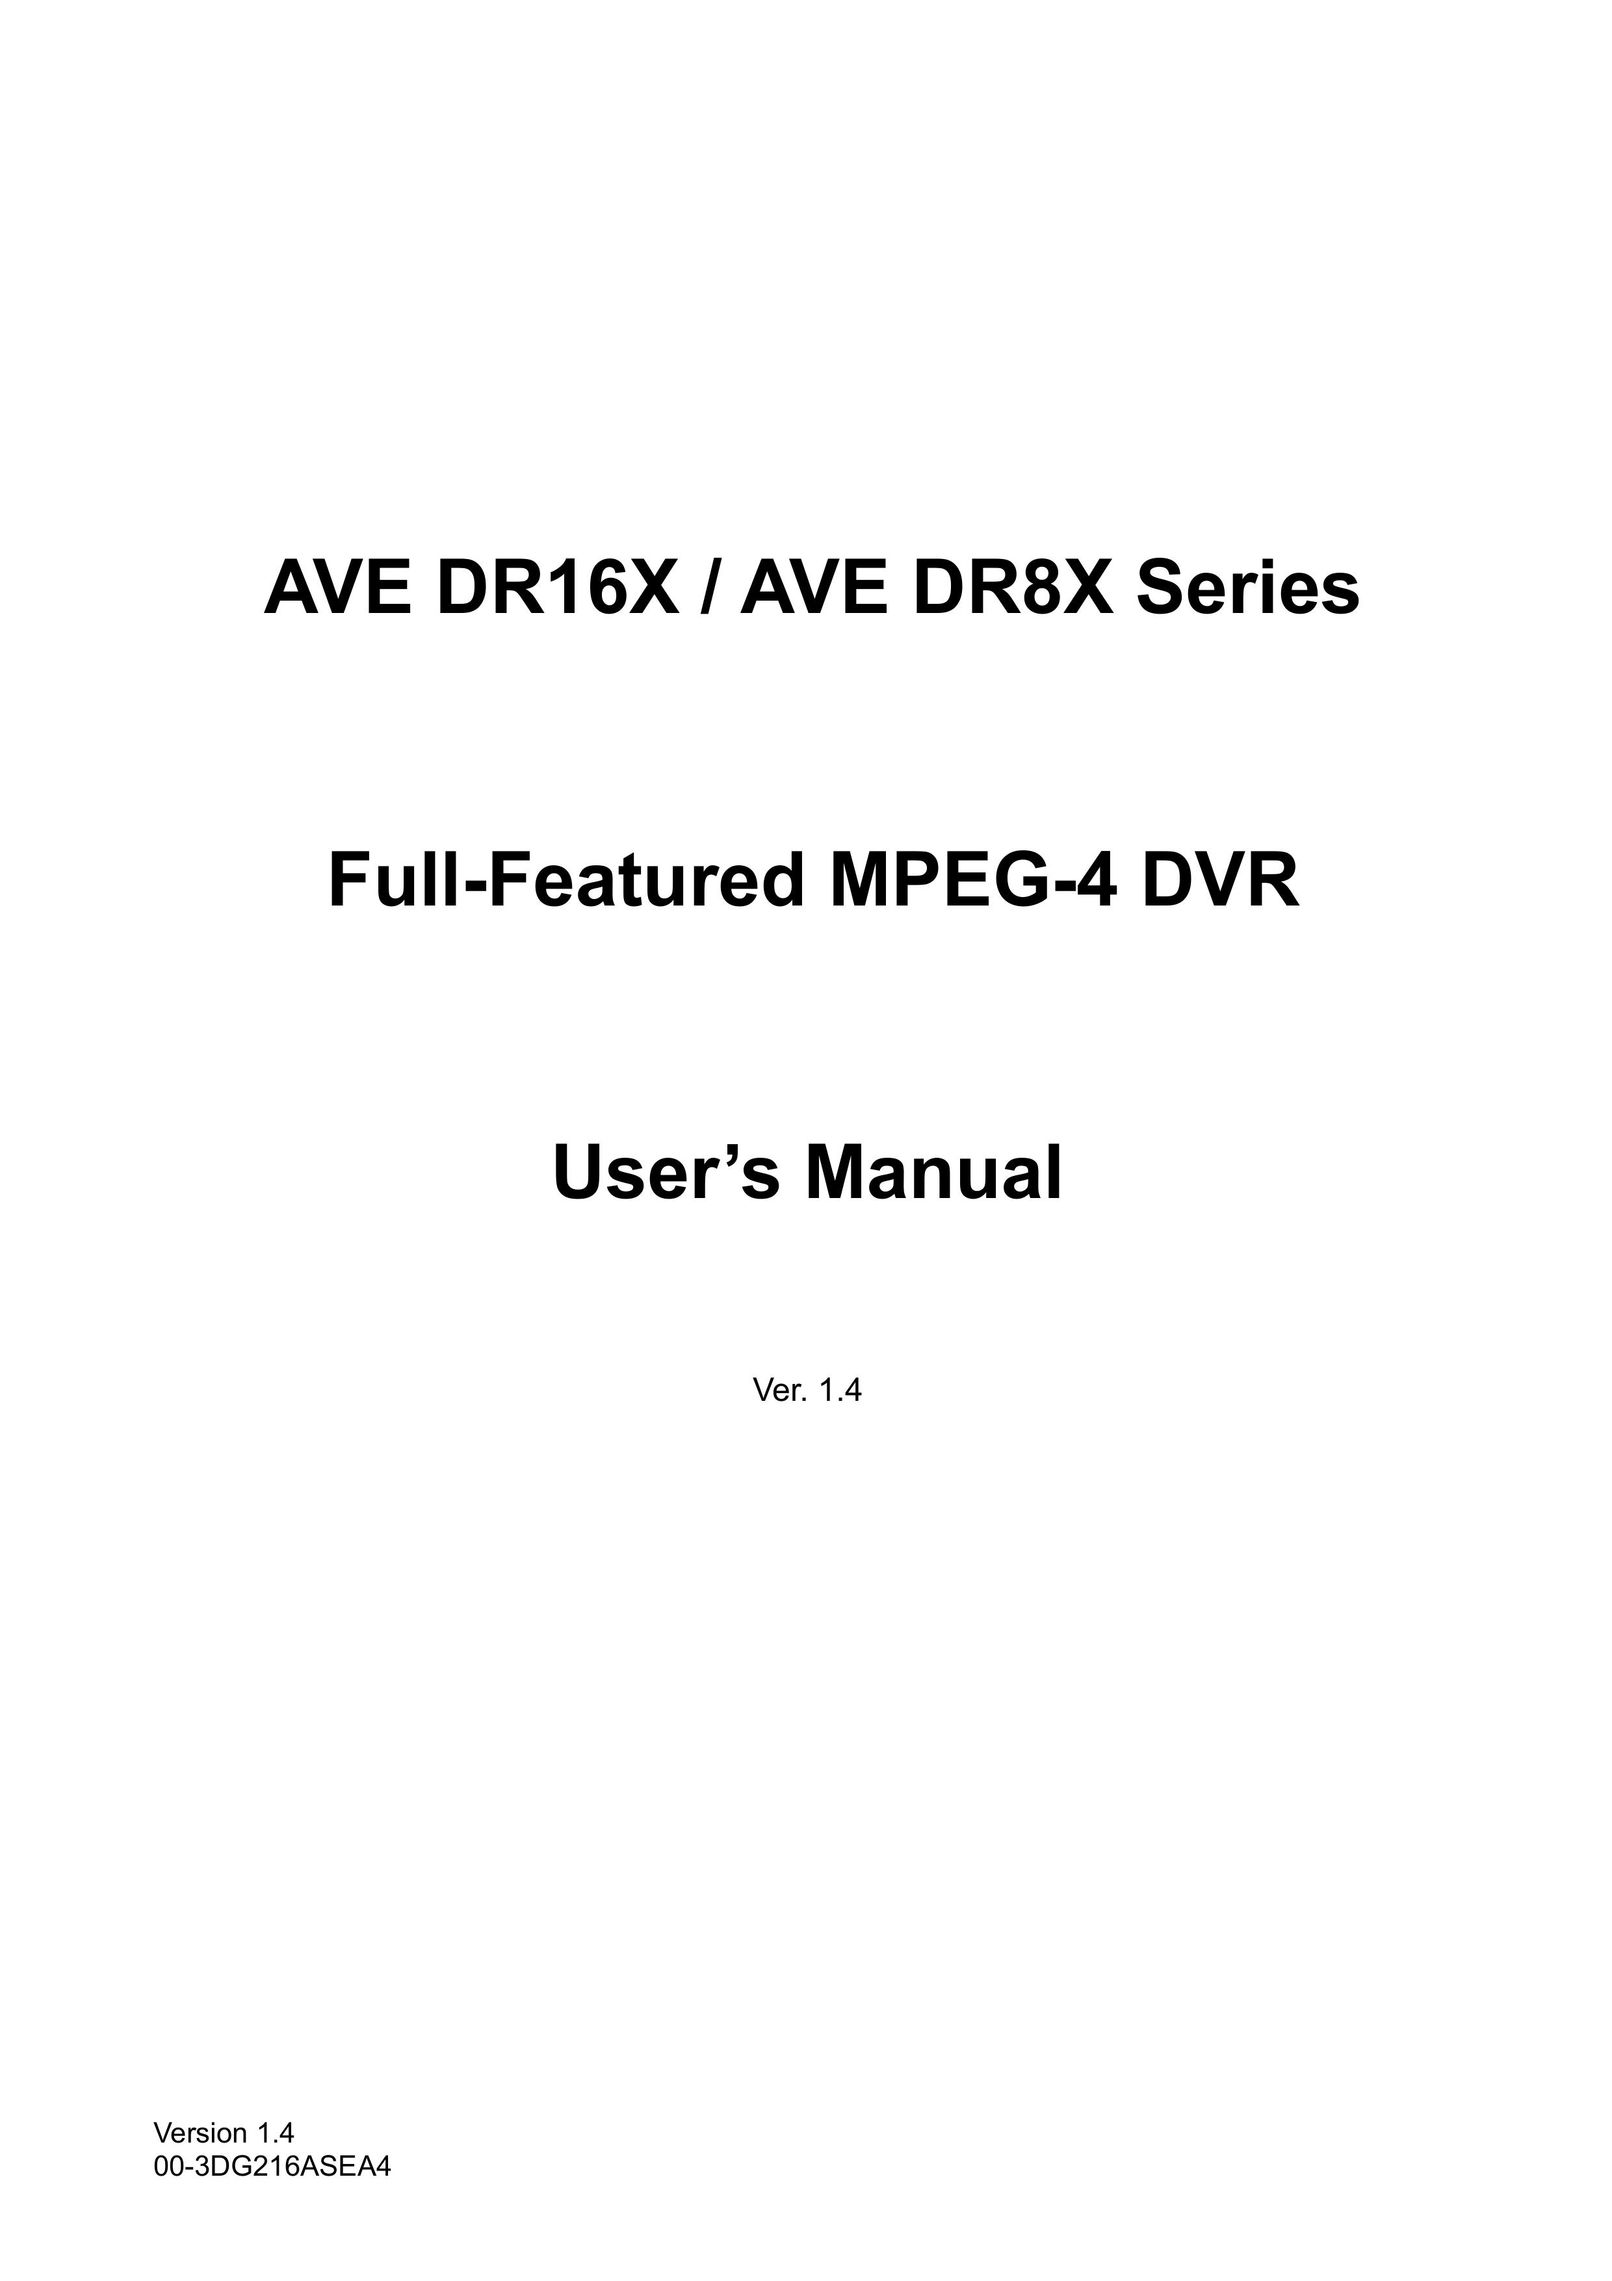 AVE MV DR16X DVR User Manual